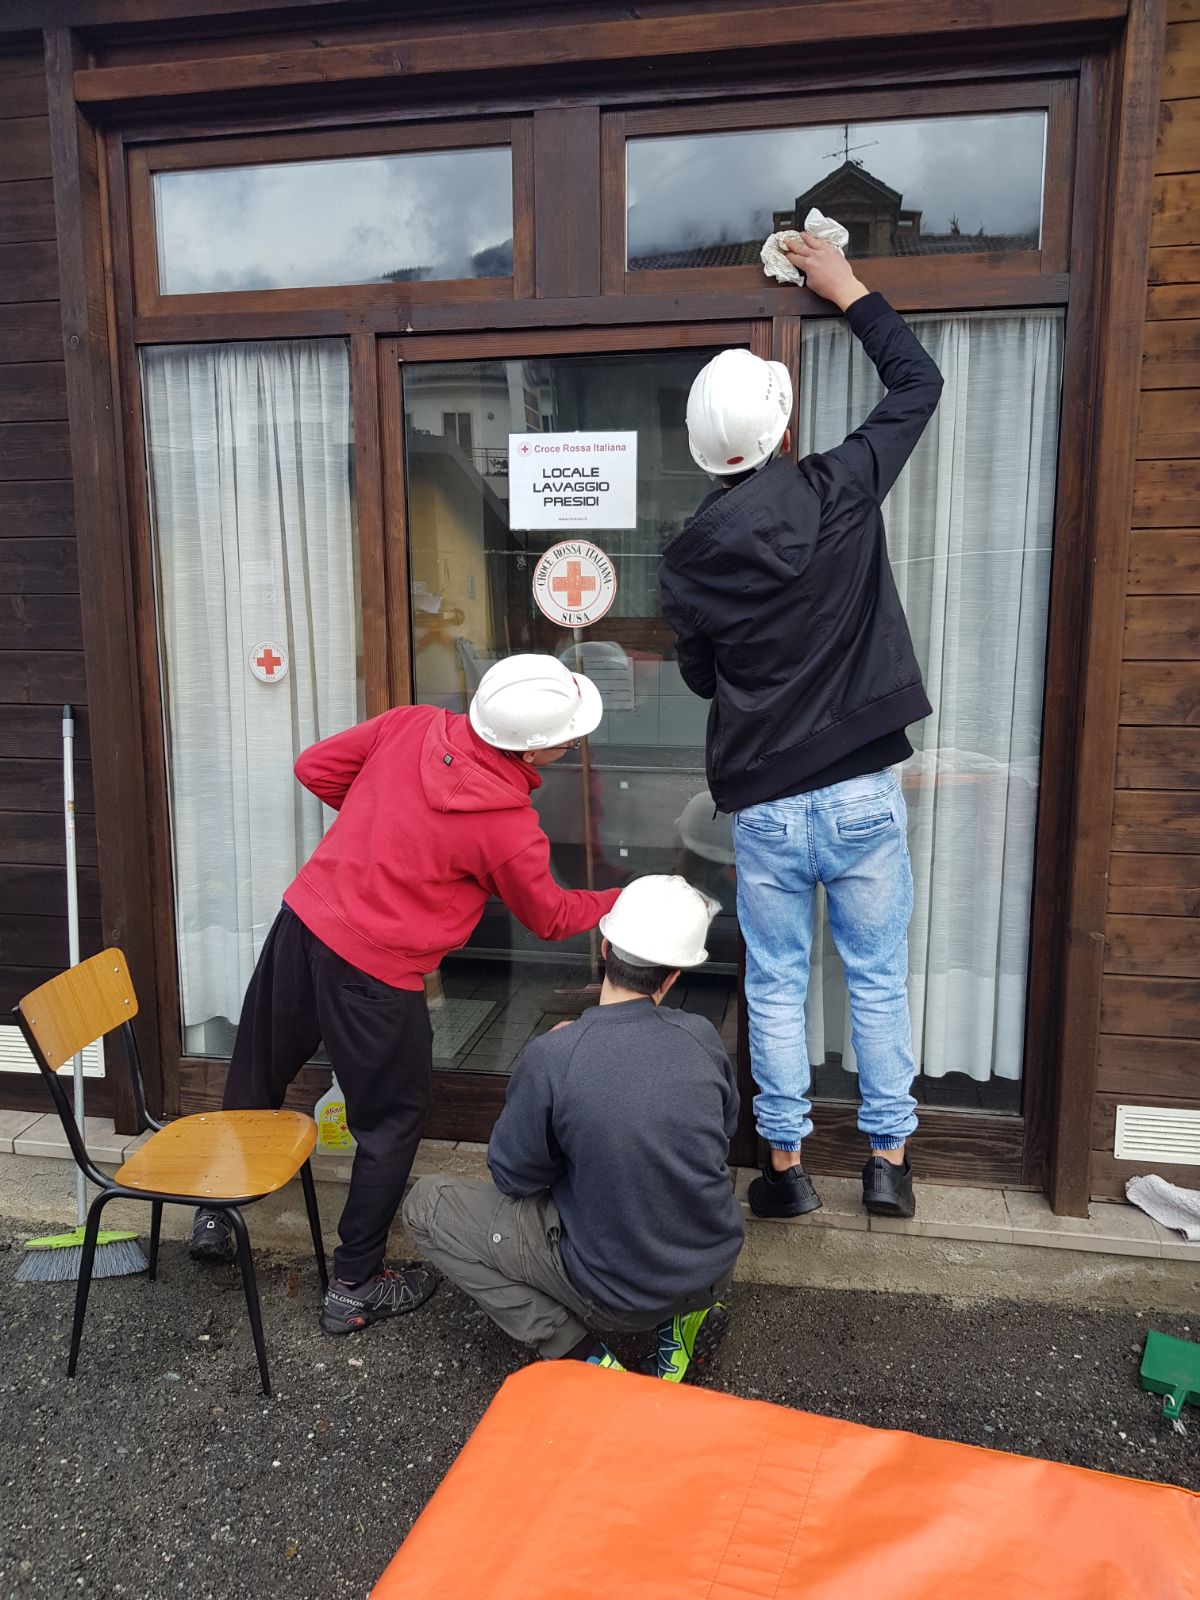 Nella foto Edoardo, Luca e Klajdi impegnati in un’attività presso la sede CRI.